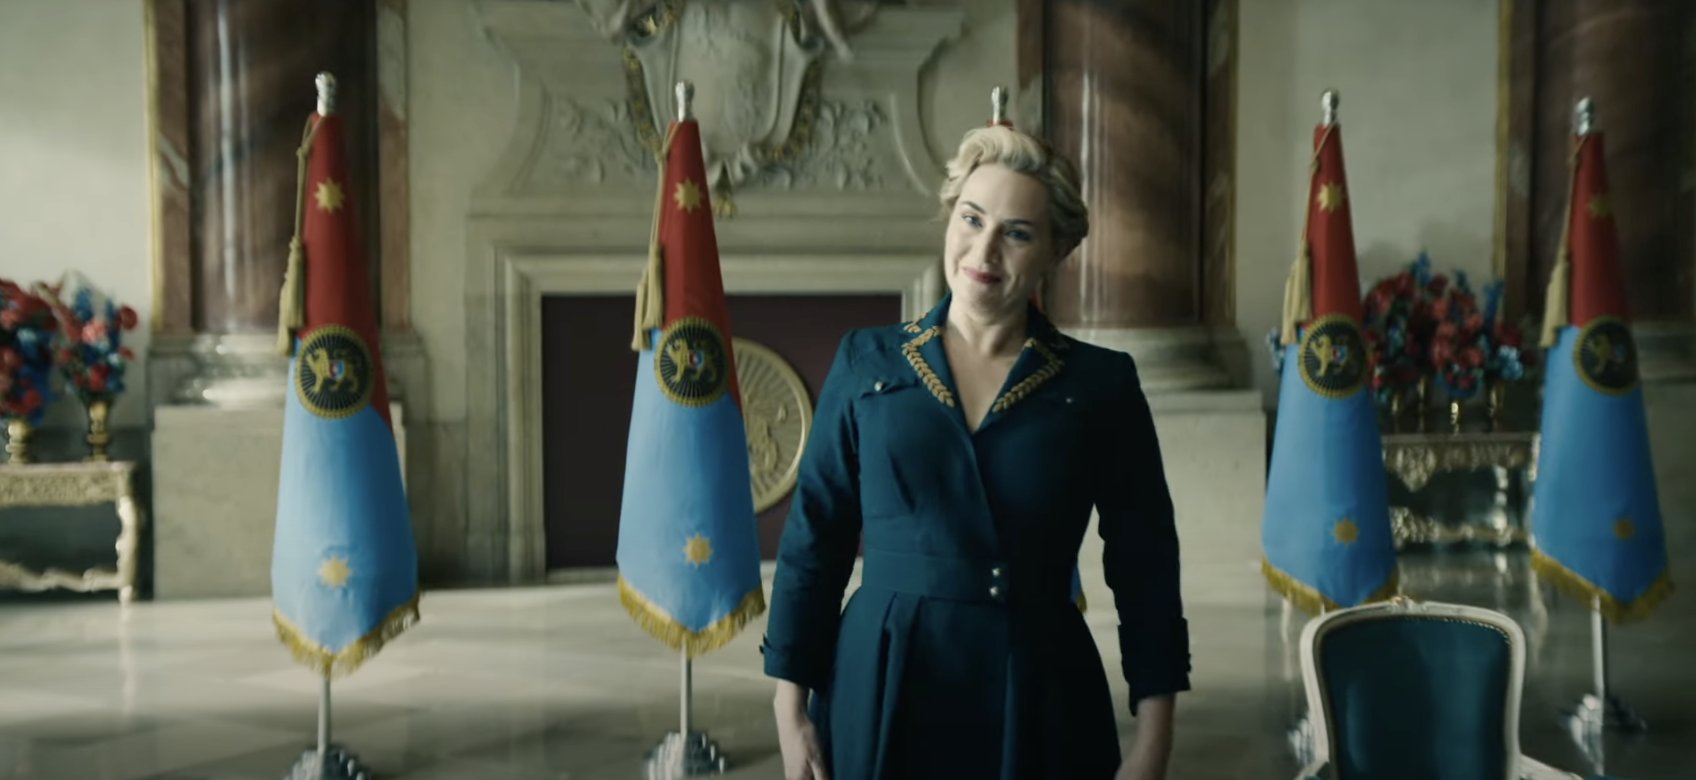 Eerste kijk op Kate Winslet & Matthias Schoenaerts in The Regime op Max